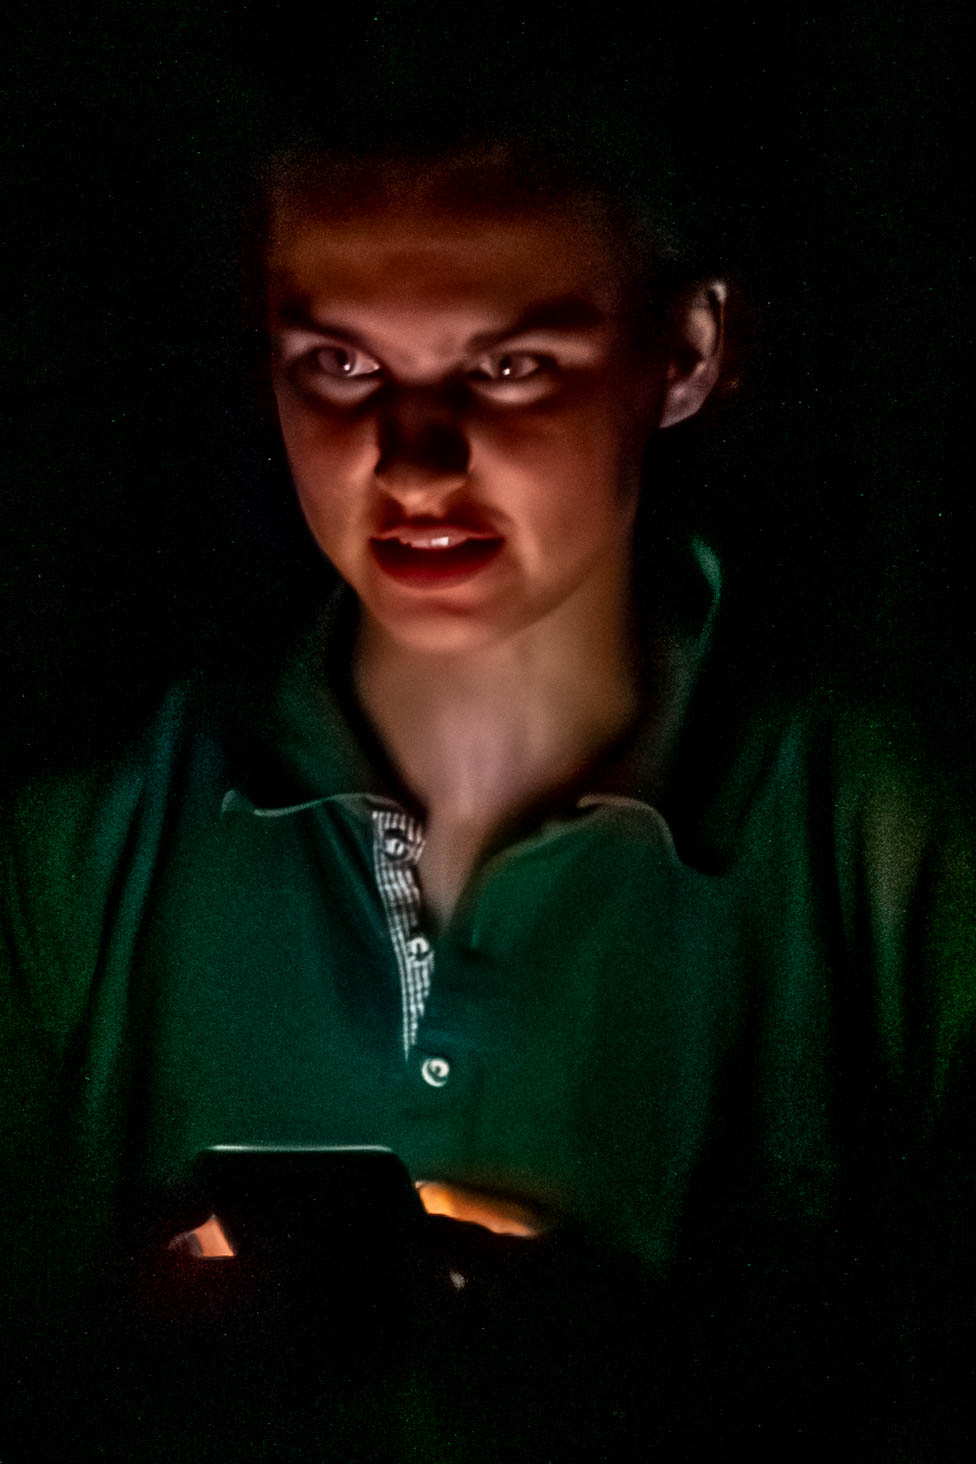 Artistin spricht und wird von unten von dem Handybildschirm beleuchtet, der Raum ist dunkel.